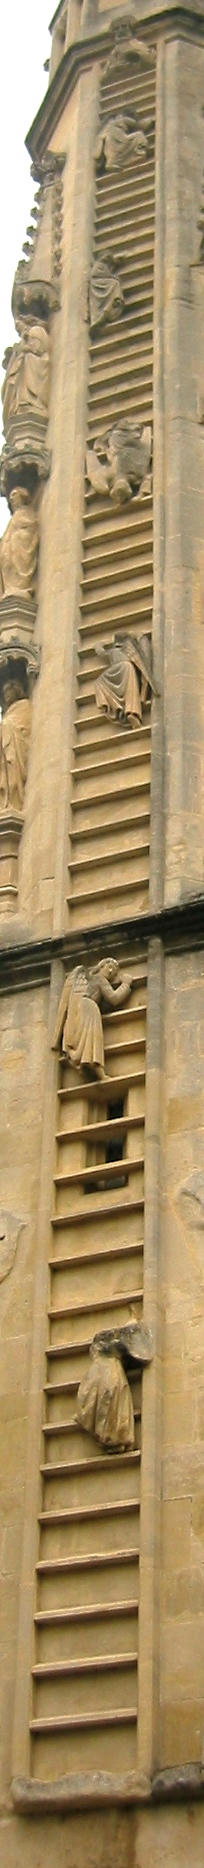 「ヤコブの梯子」の彫刻、バース寺院Bath Abbey、イギリス